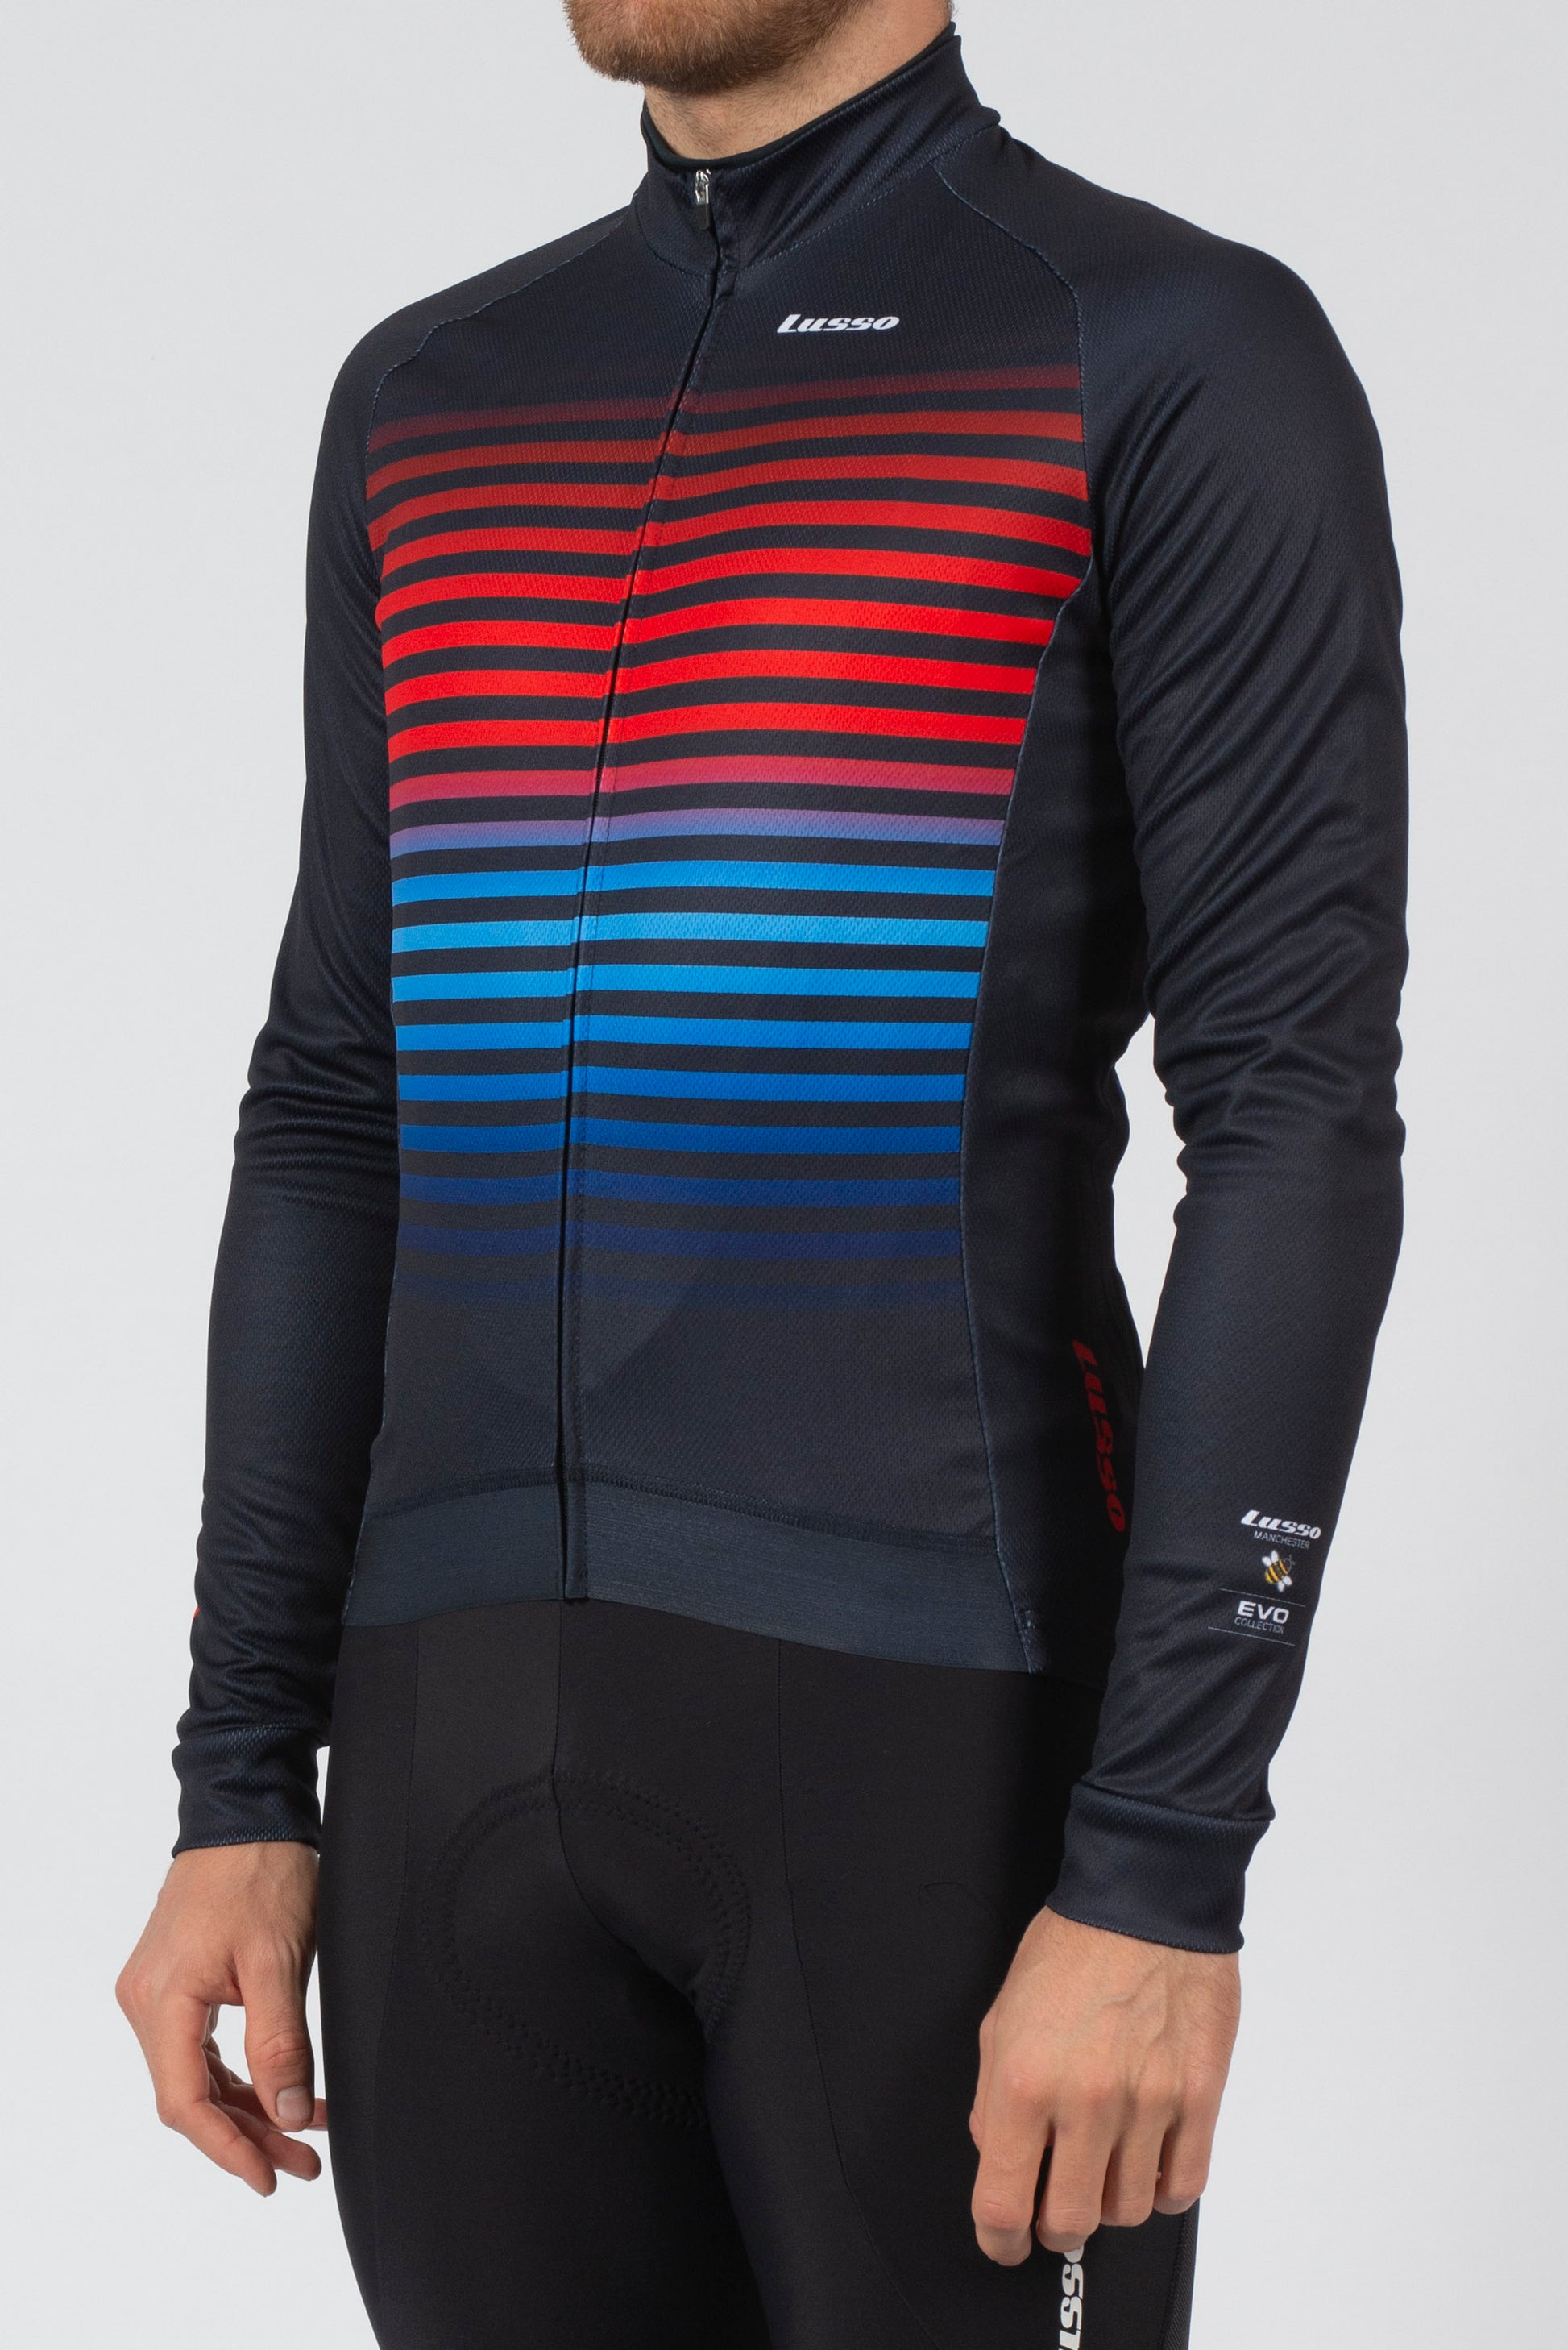 Evo Long Sleeve Jersey - Lusso Cycle Wear